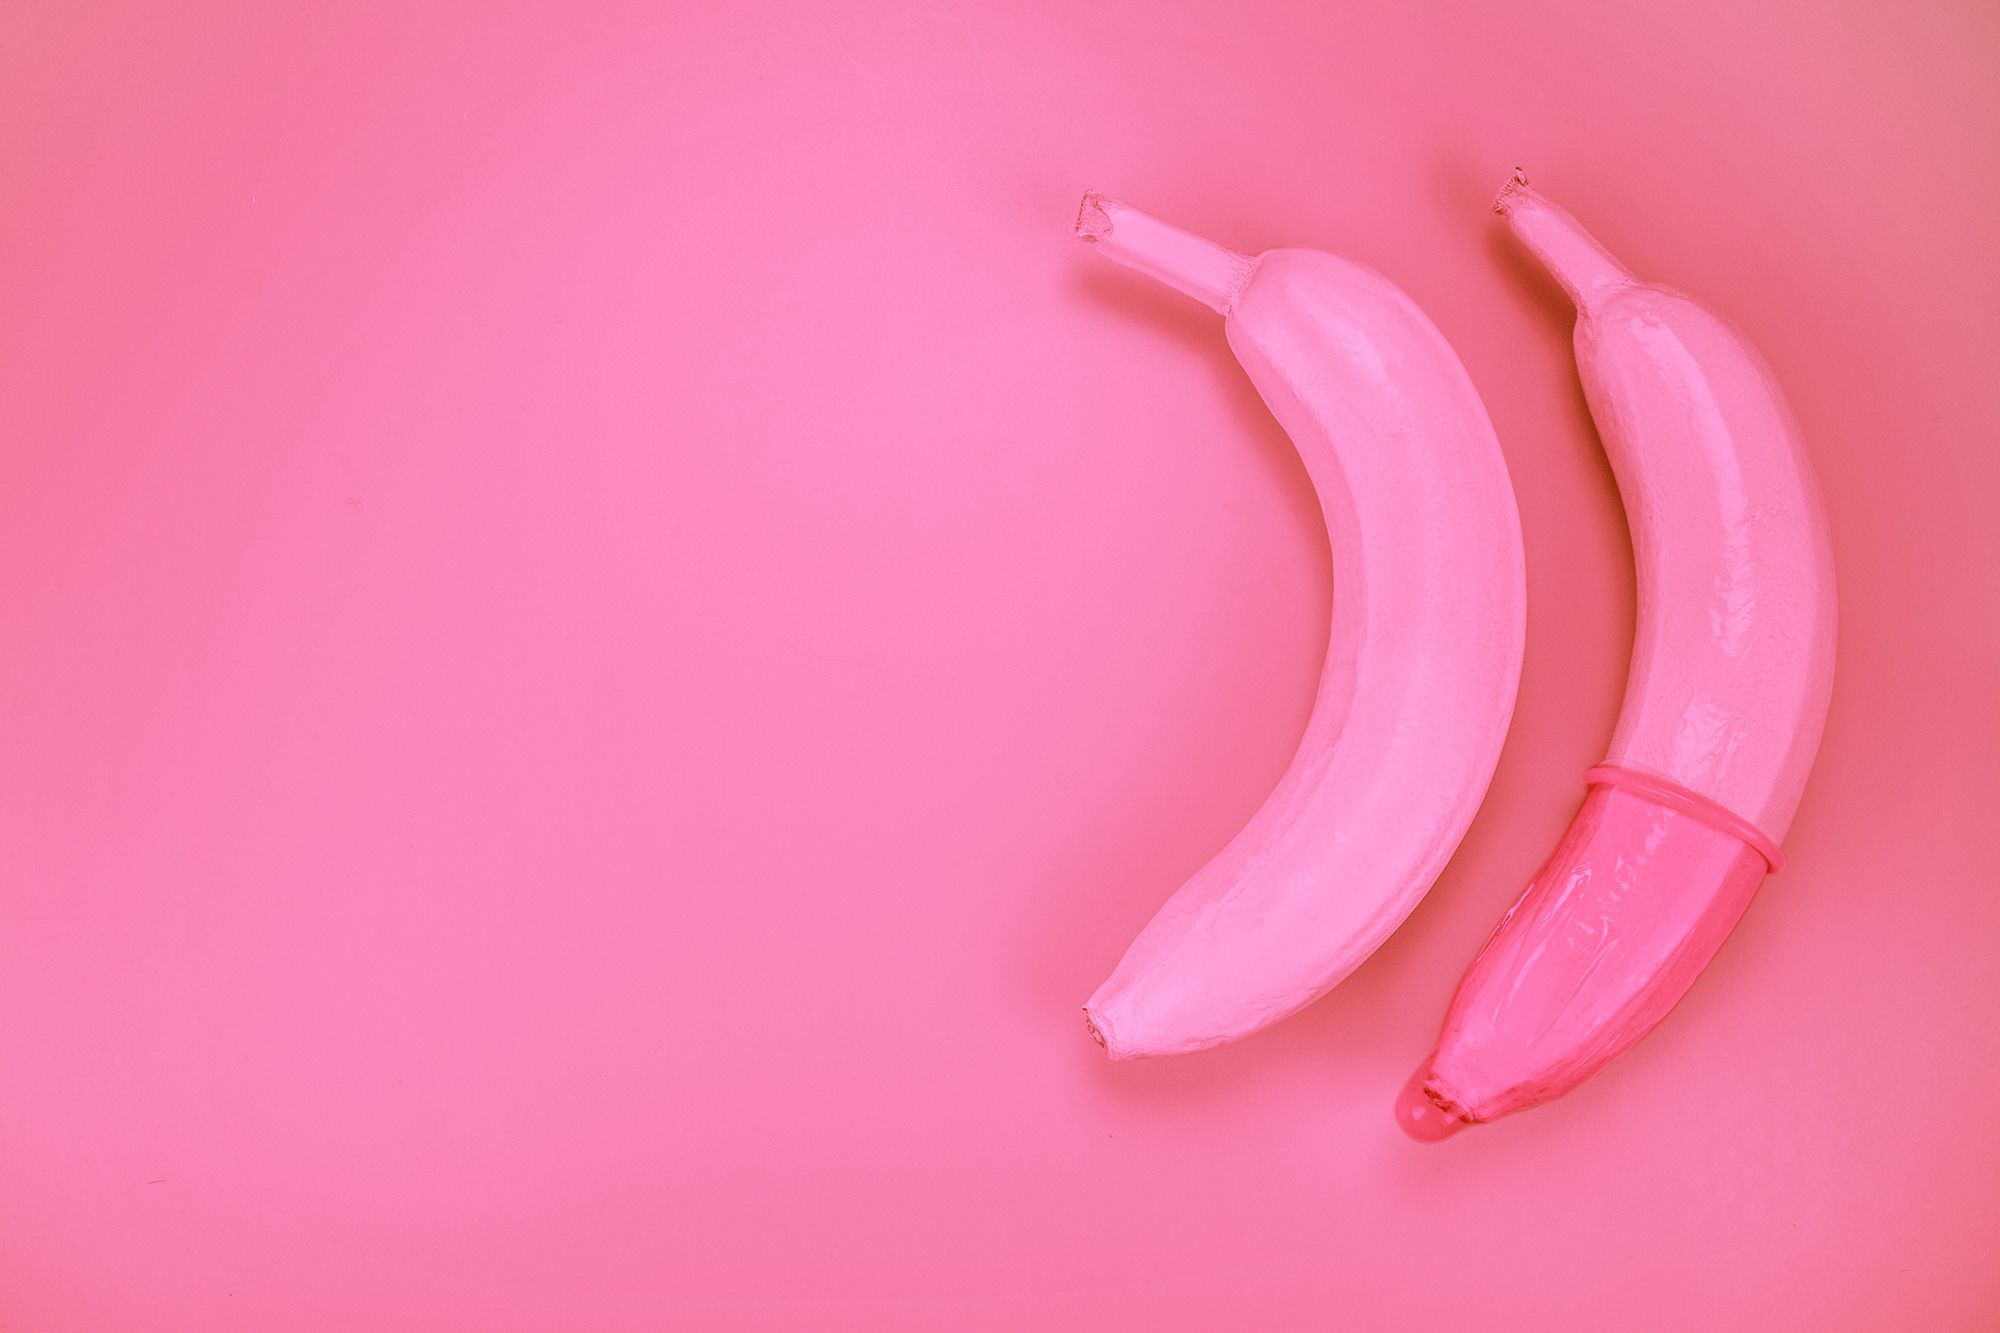 Zwei pinke Bananen, über eine ist ein Kondom gestülpt